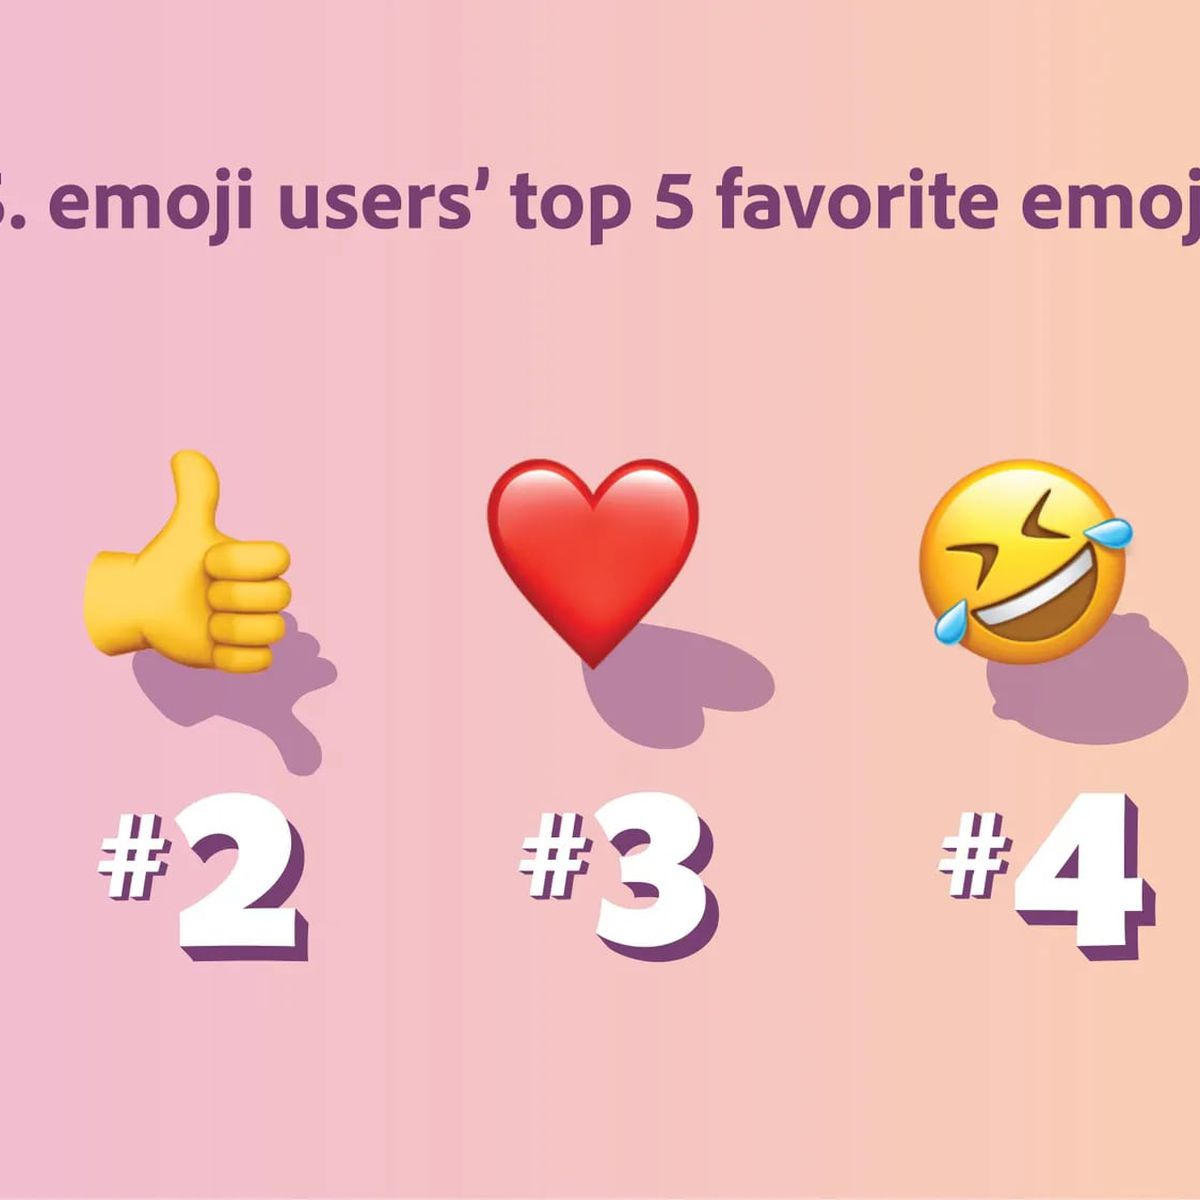 Veja 12 emojis temáticos locais que você usa em outro contexto; entenda